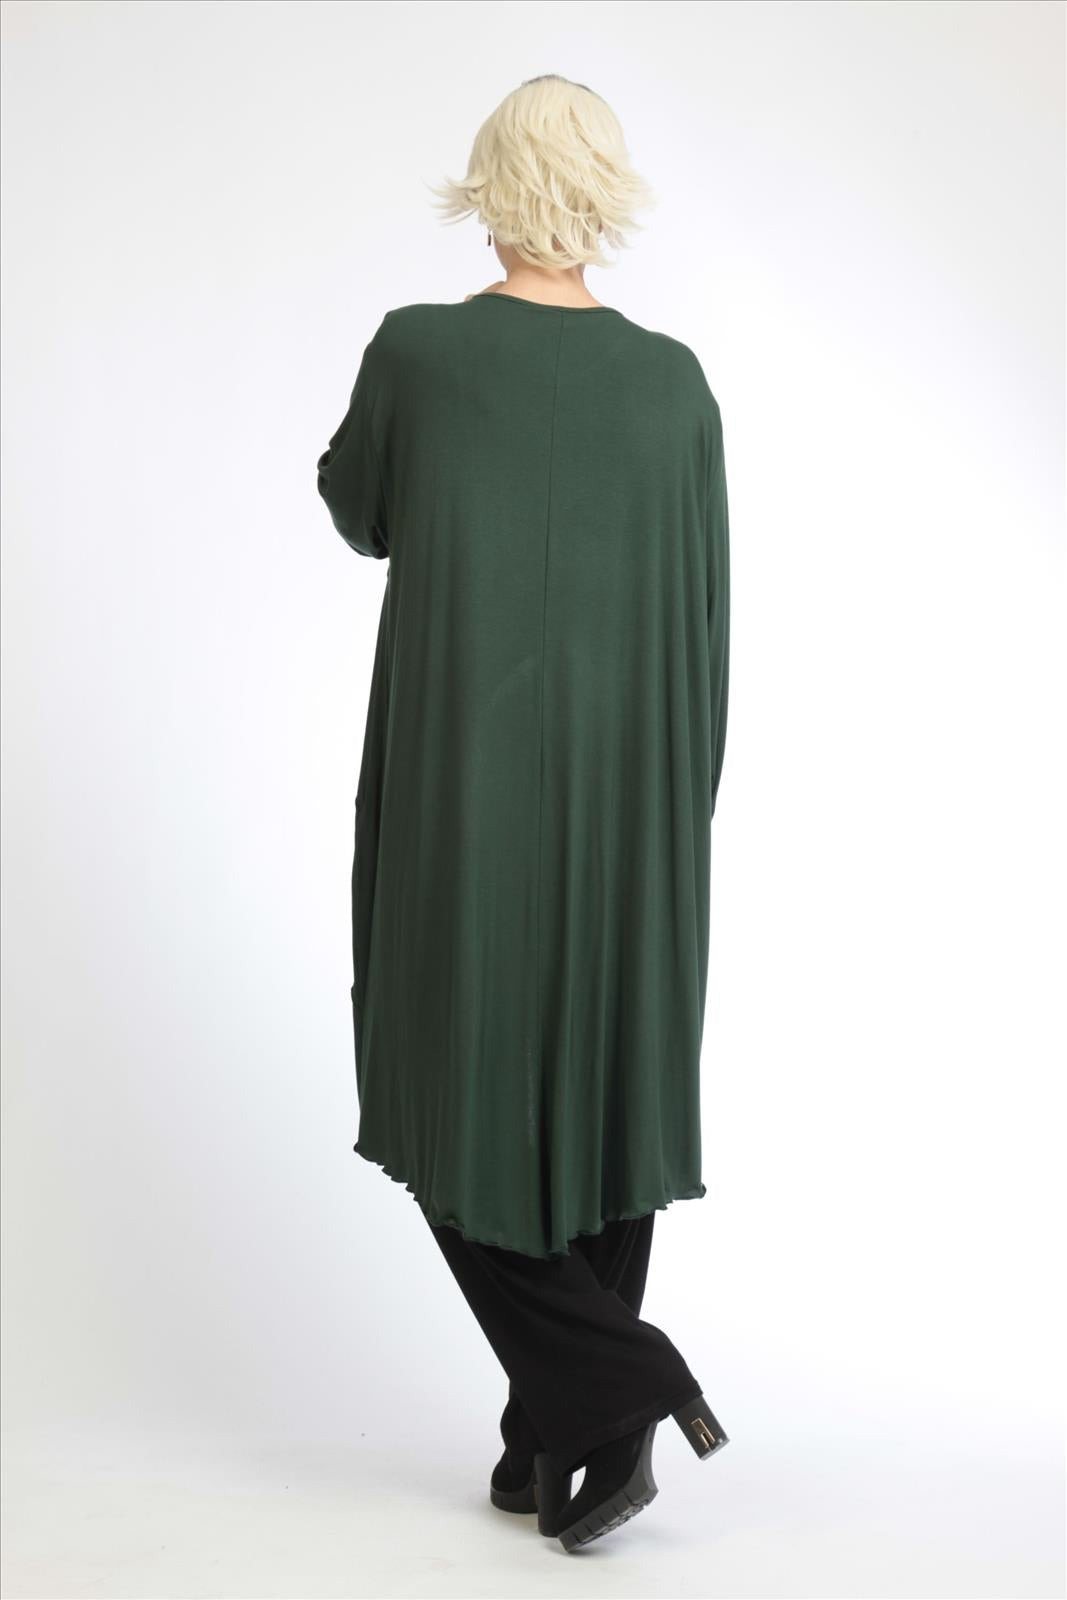 Alltags Kleid in Form aus feiner Jersey Qualität, Grün Lagenlook Oversize Mode B2B Großhandel